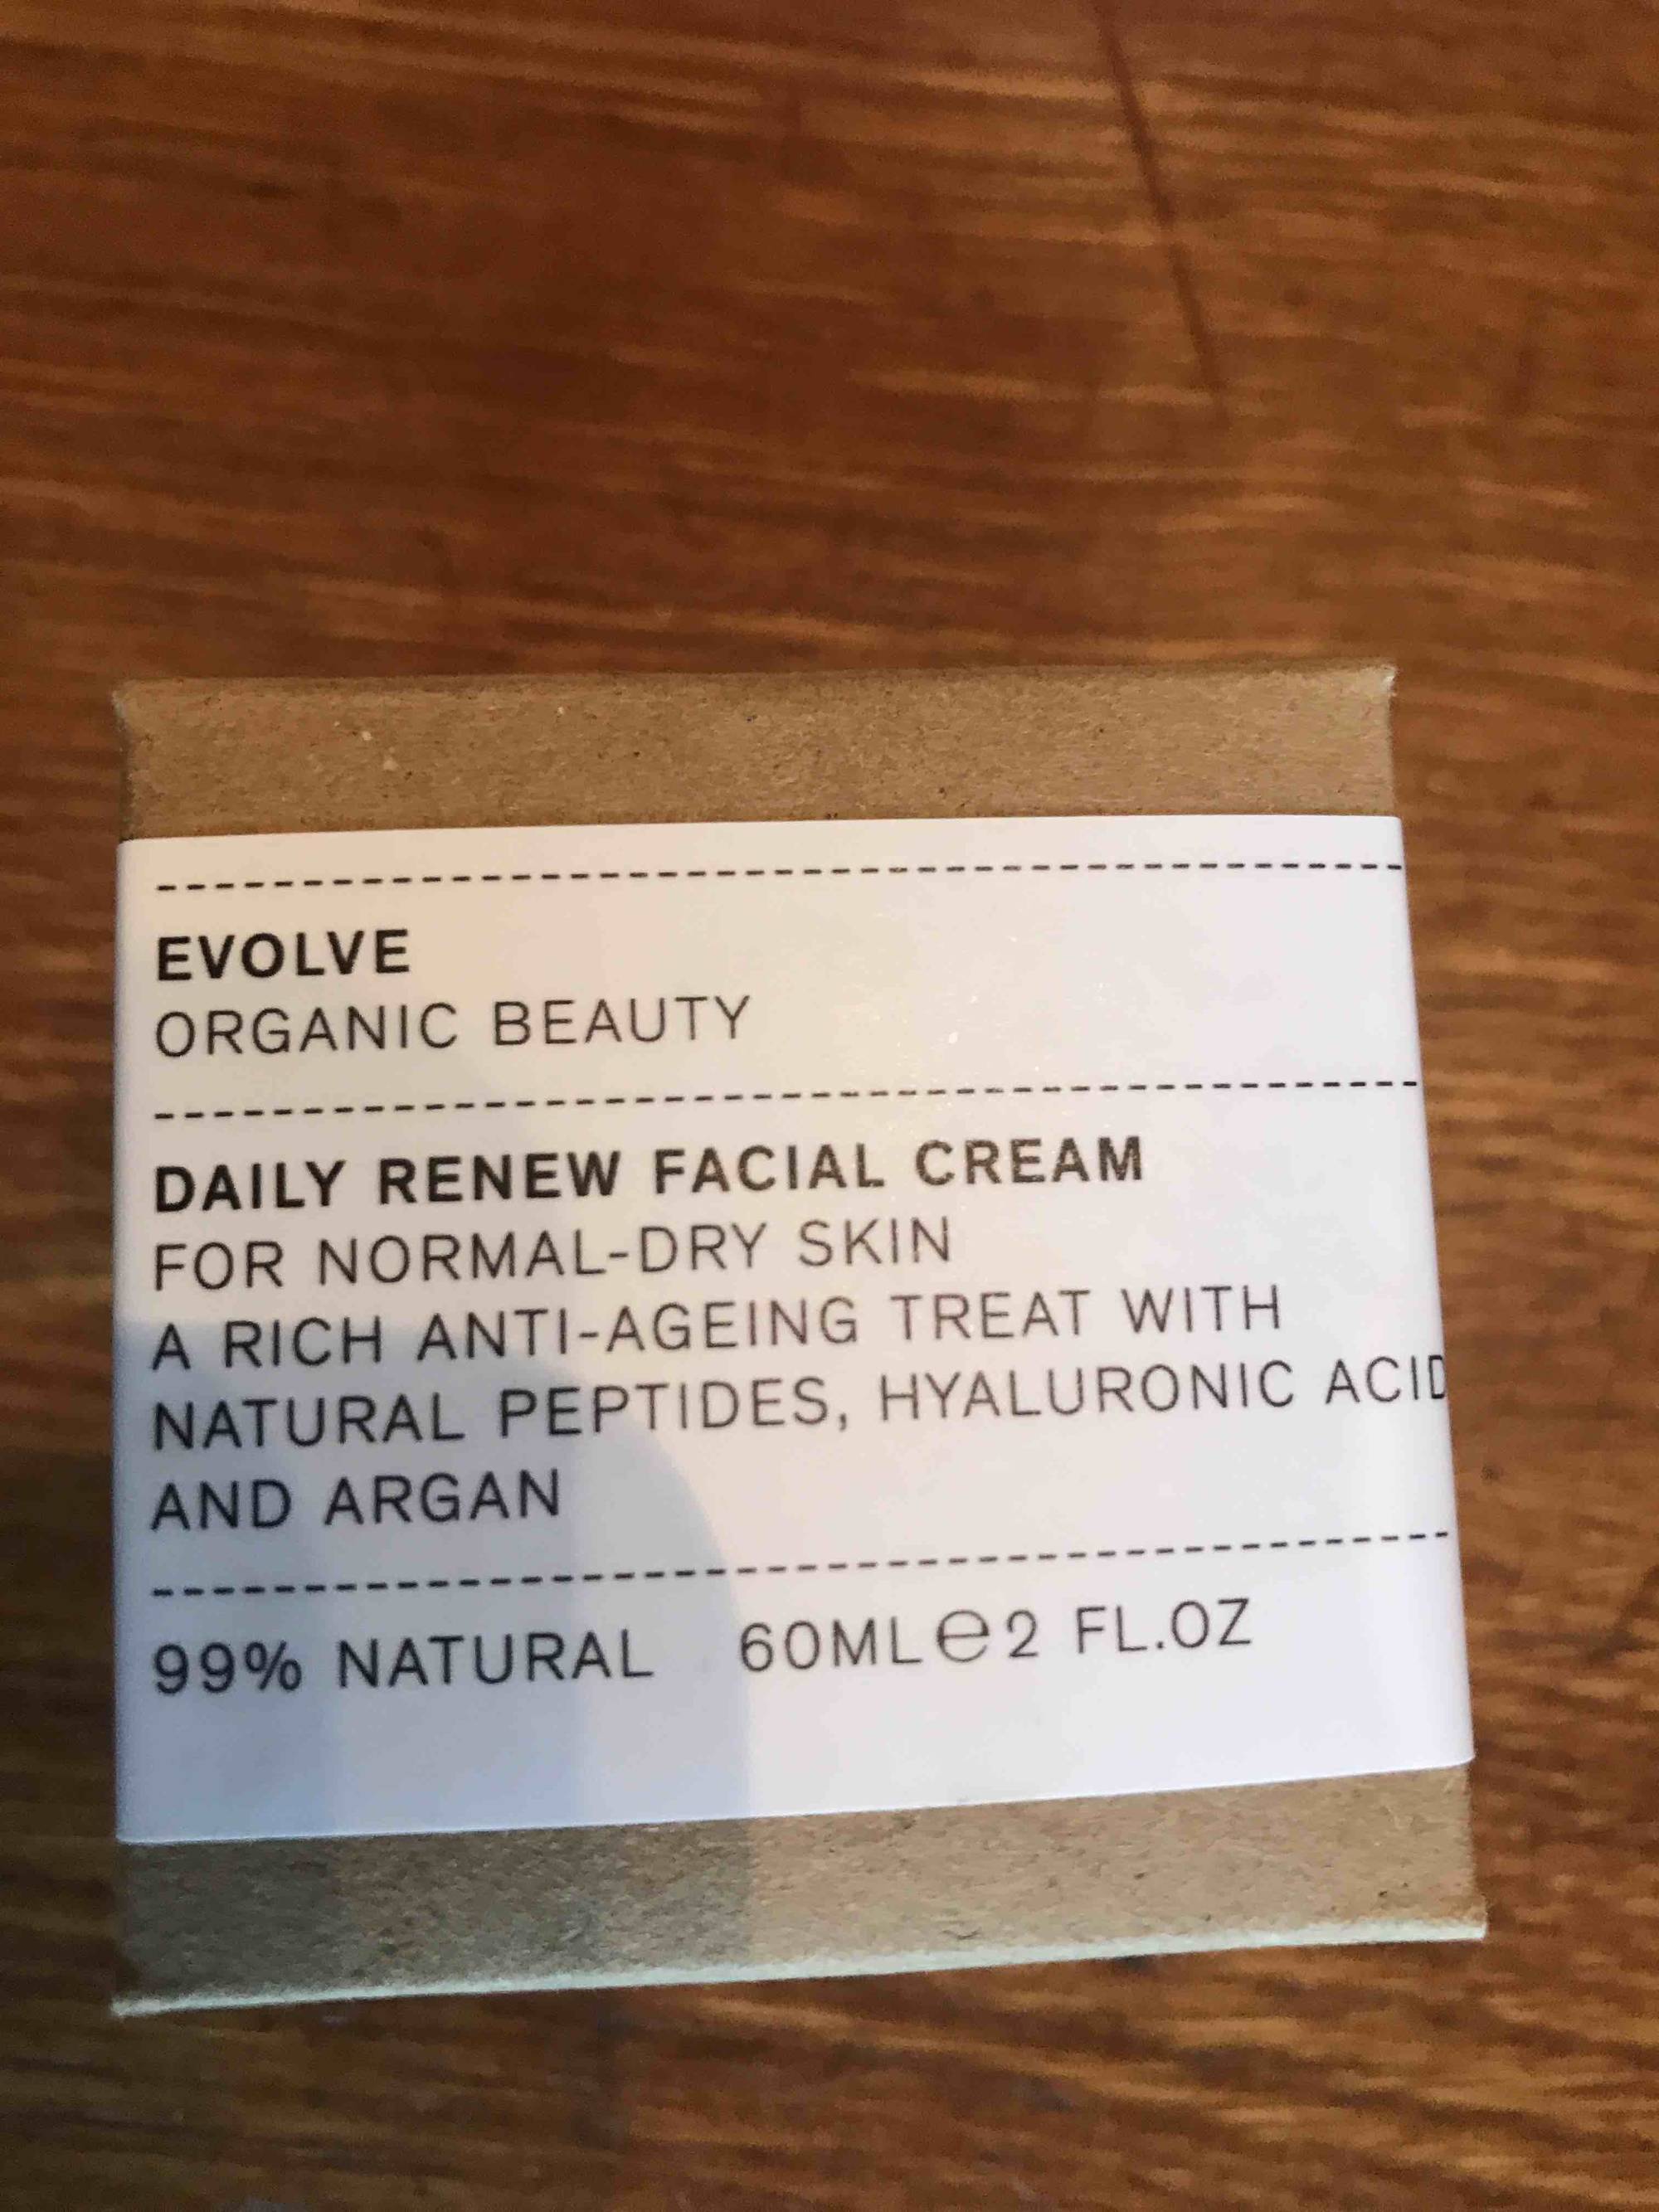 EVOLVE - Daily renew facial cream